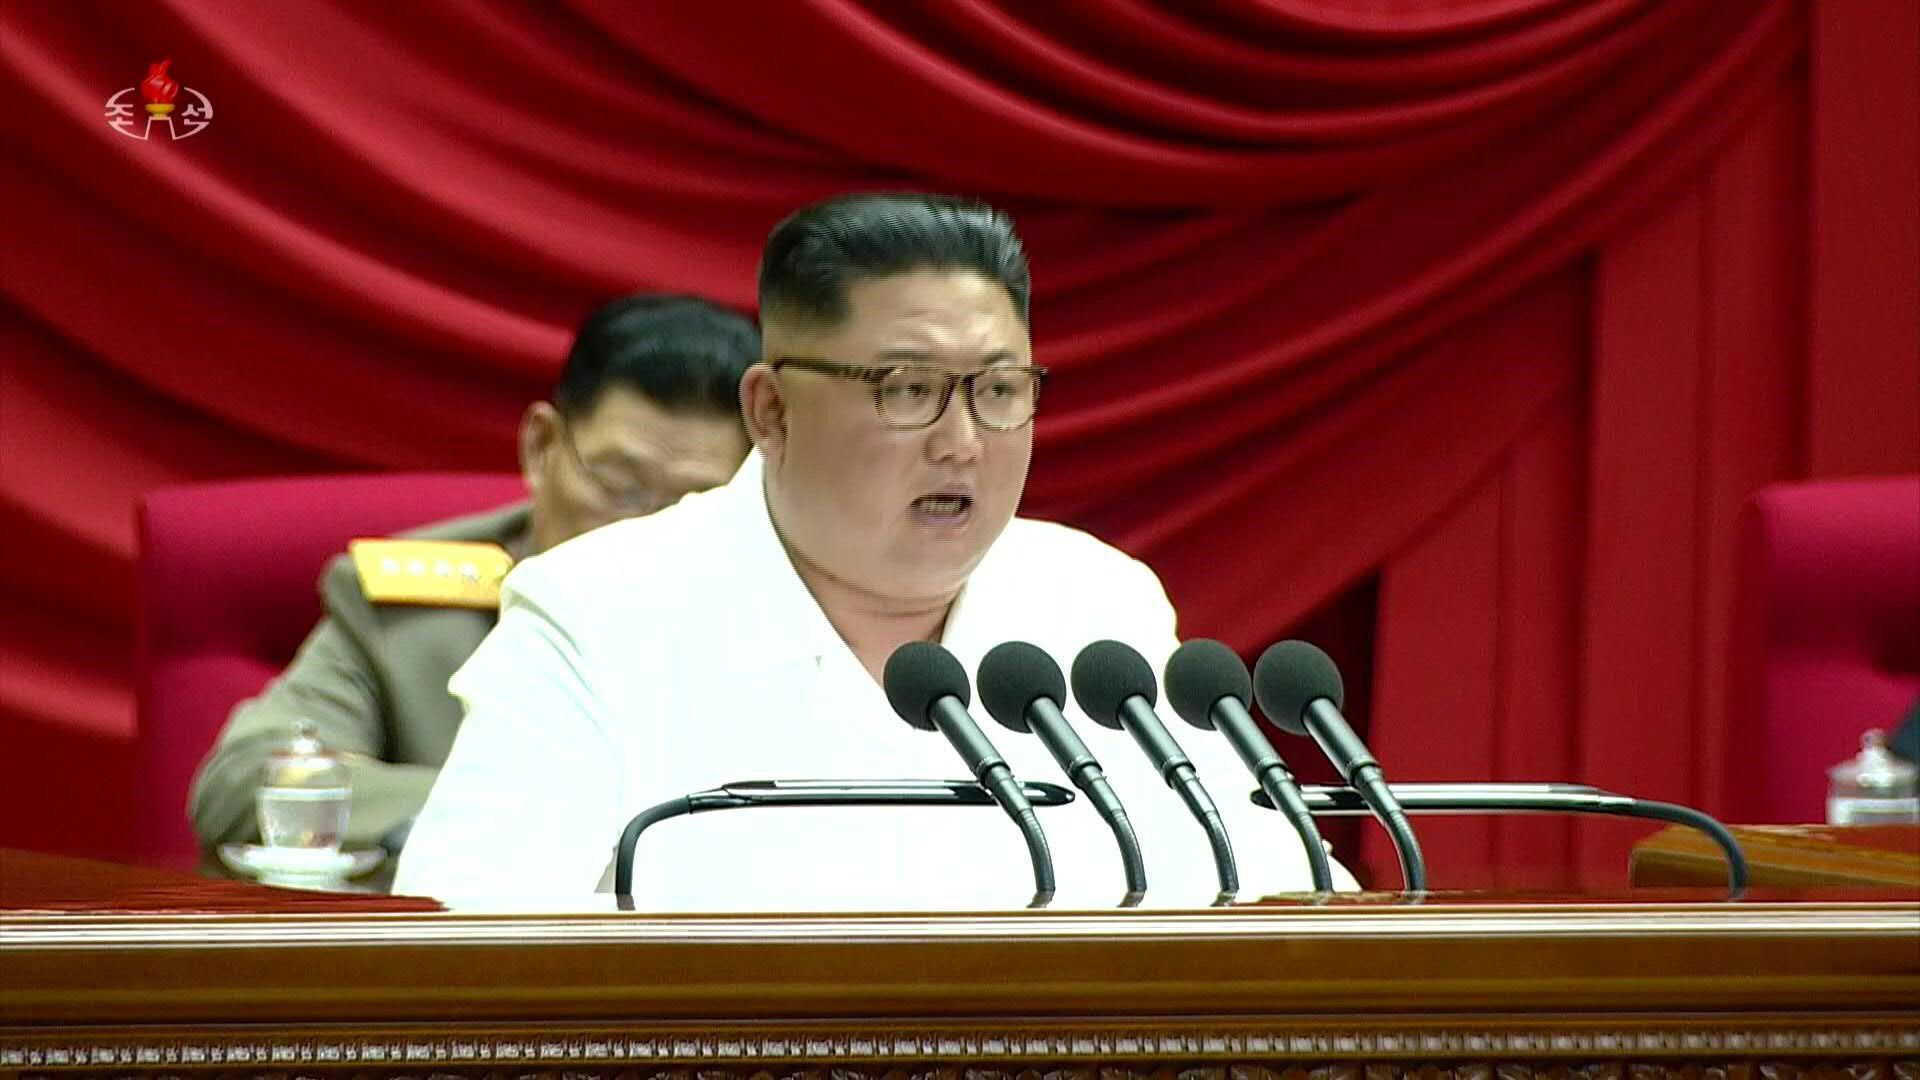 El líder norcoreano Kim Jong Un anunció el miércoles el final de la moratoria sobre los ensayos nucleares y sobre el test de misiles balísticos intercontinentales y prometió una acción "impactante" contra Estados Unidos, que reaccionó con moderación.